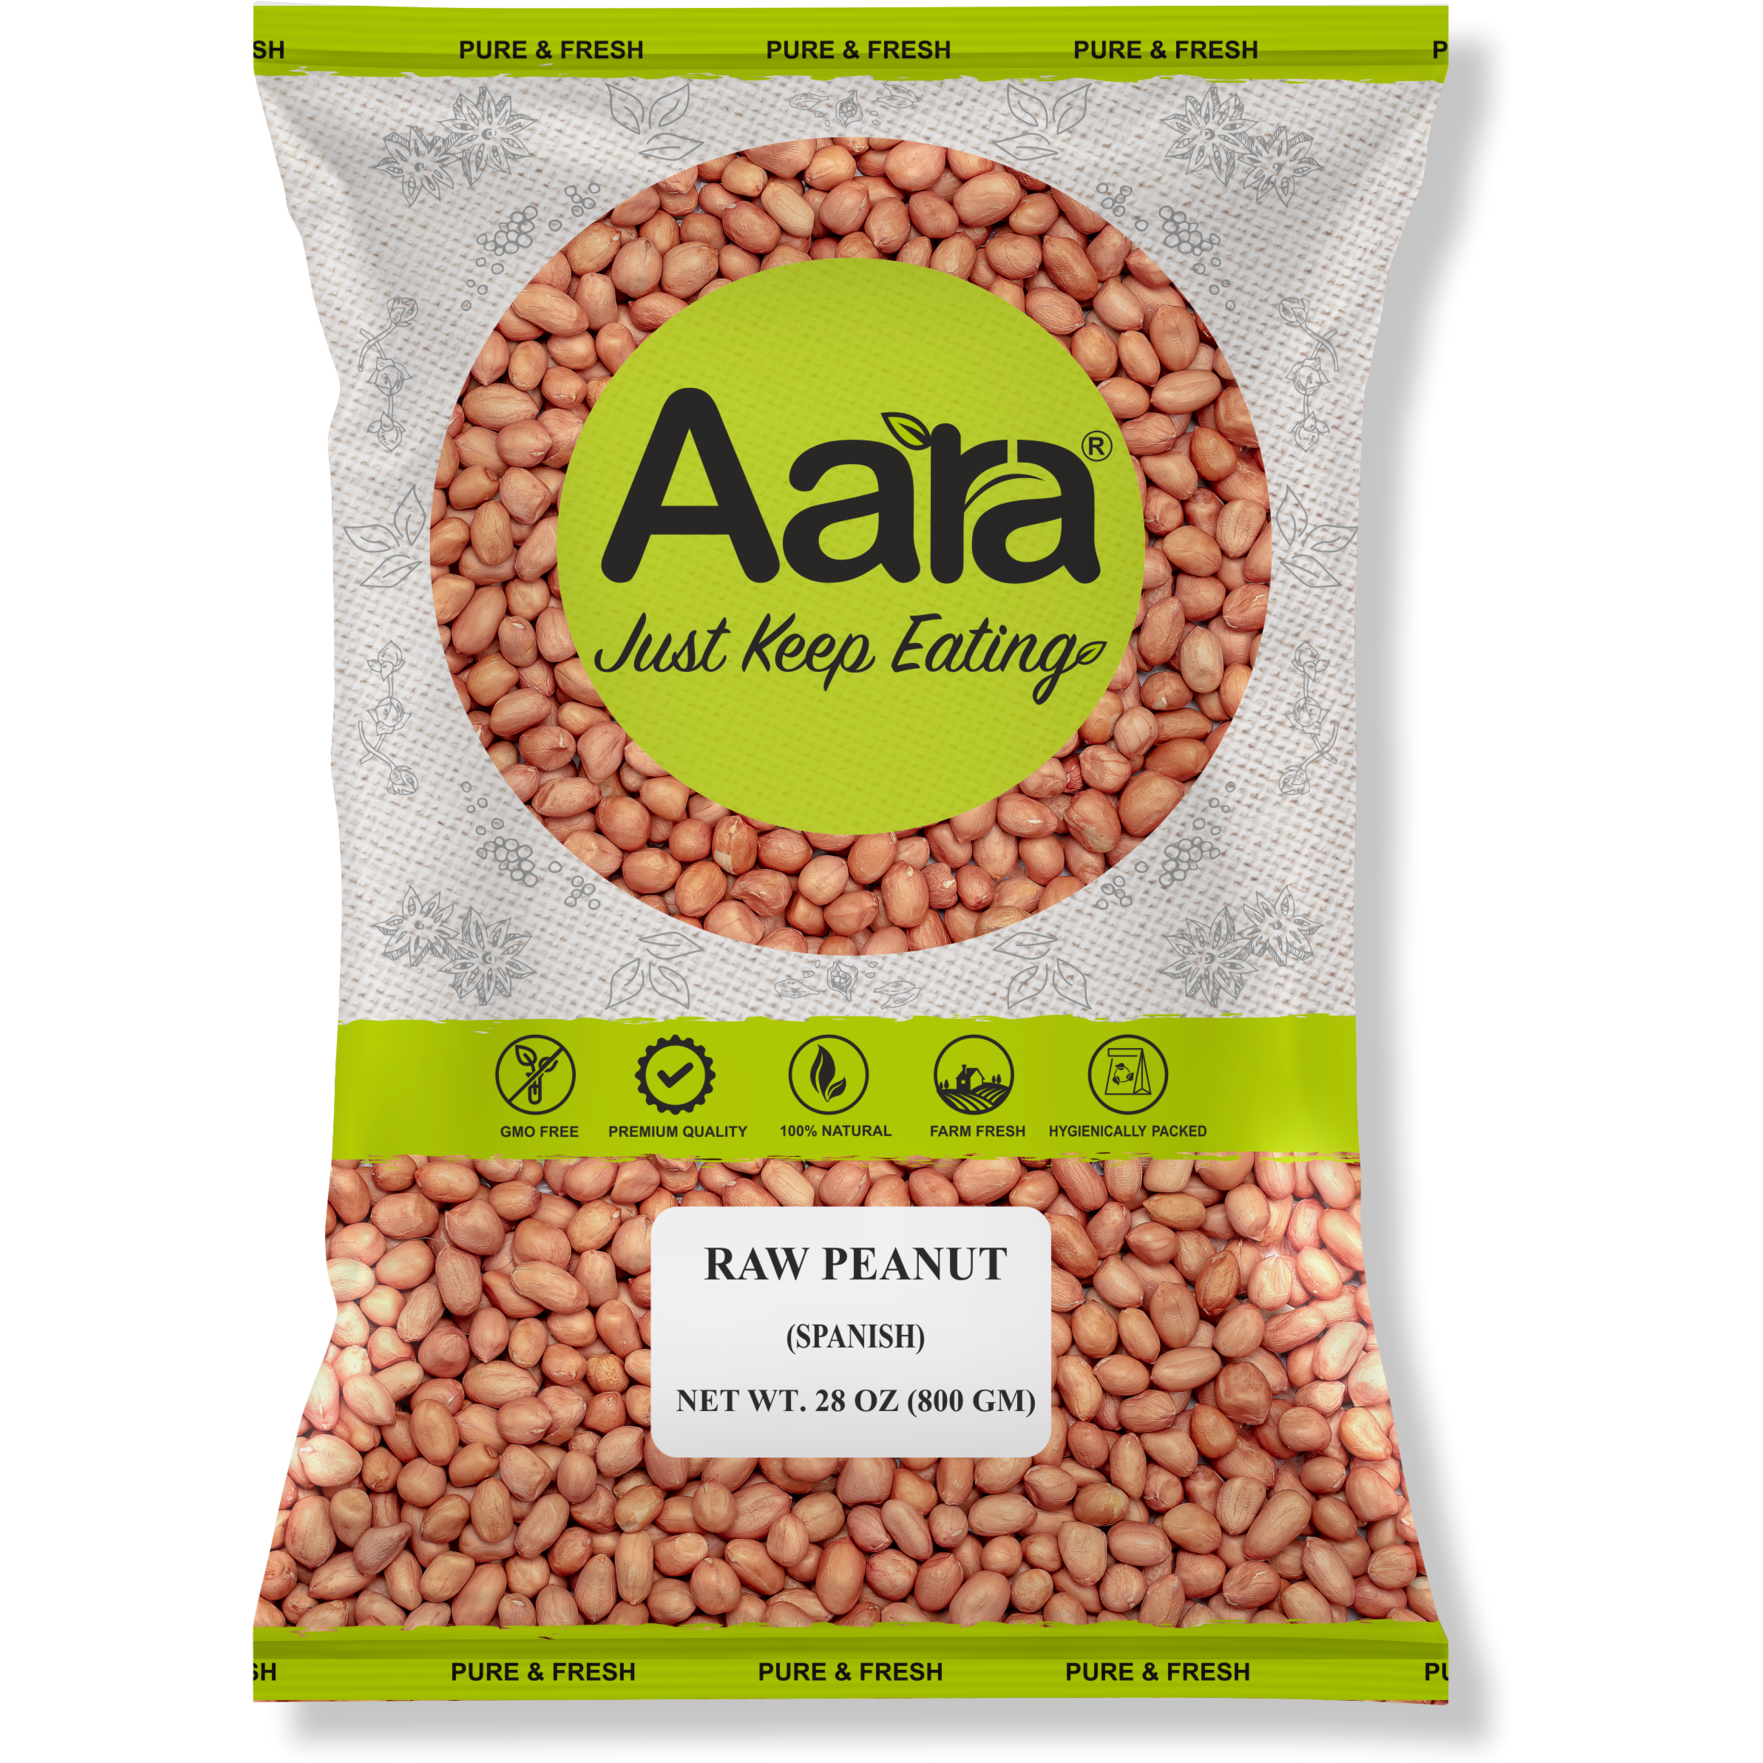 Pack of 4 - Aara Raw Peanuts - 800 Gm (28 Oz)